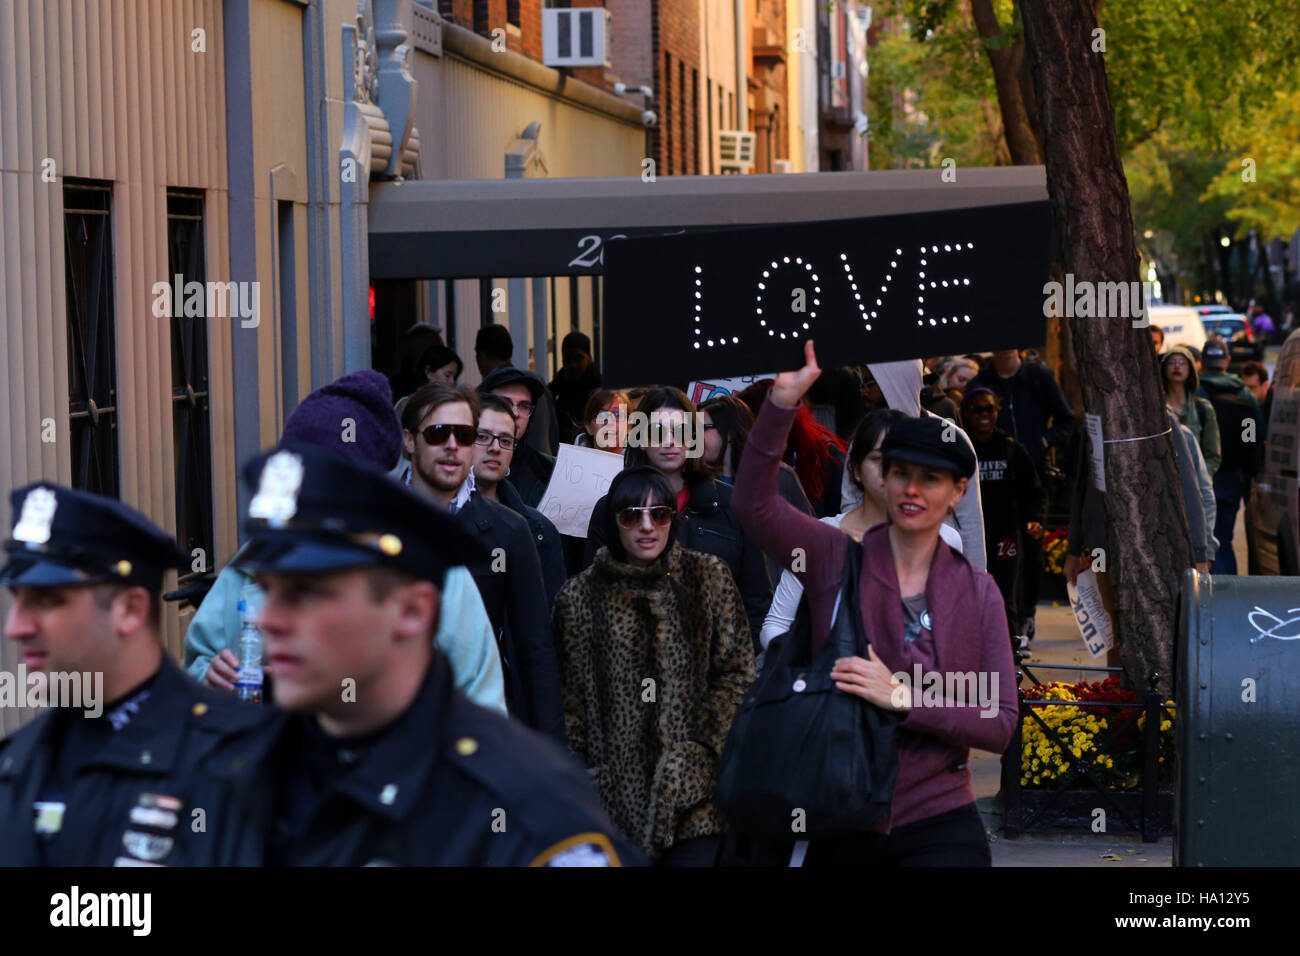 Halten Sie eine Leuchtreklame, "Liebe" bei einer Demonstration. Stockfoto